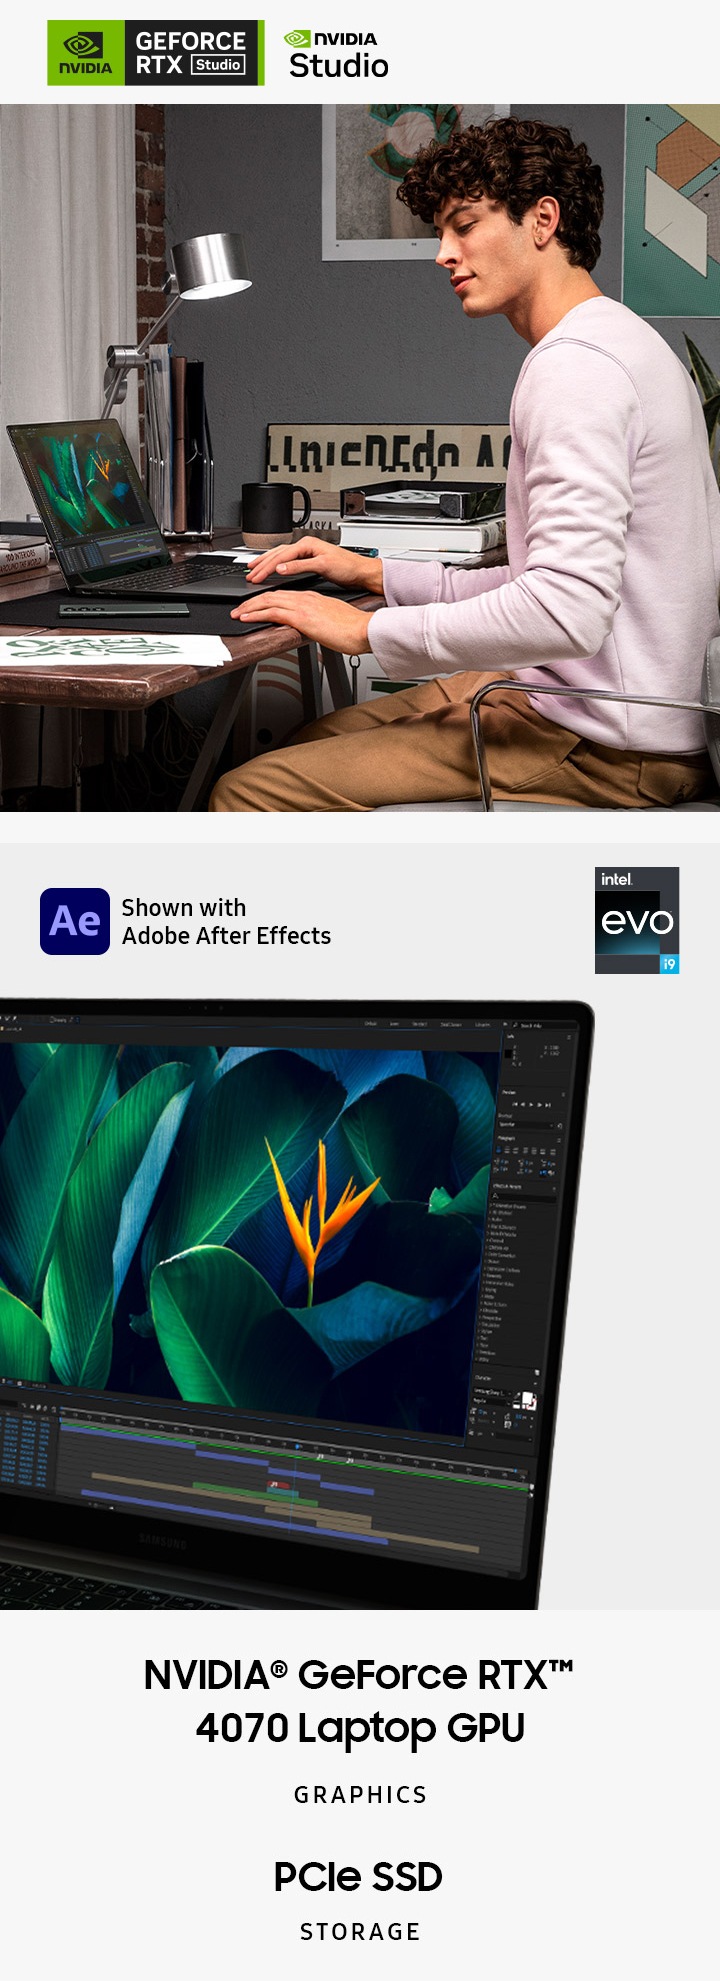 좌측 이미지는 책상에 앉아 있는 한 남성이 그라파이트 색상의 갤럭시 북3 울트라를 사용하고 있는 모습입니다. 그 옆에는 갤럭시 S23 울트라가 놓여 있습니다. 우측 이미지는 그라파이트 색상의 갤럭시 북3 울트라가 약간 왼쪽을 향해 열려 있는 모습입니다. 화면 안에는 Adobe After Effect가 켜져 있습니다. 해당 이미지의 상단에는 Intel Evo i7 및 Intel Evo i9 배지와 Adobe After Effects 로고도 표시되어 있습니다. 두 이미지의 하단에는 